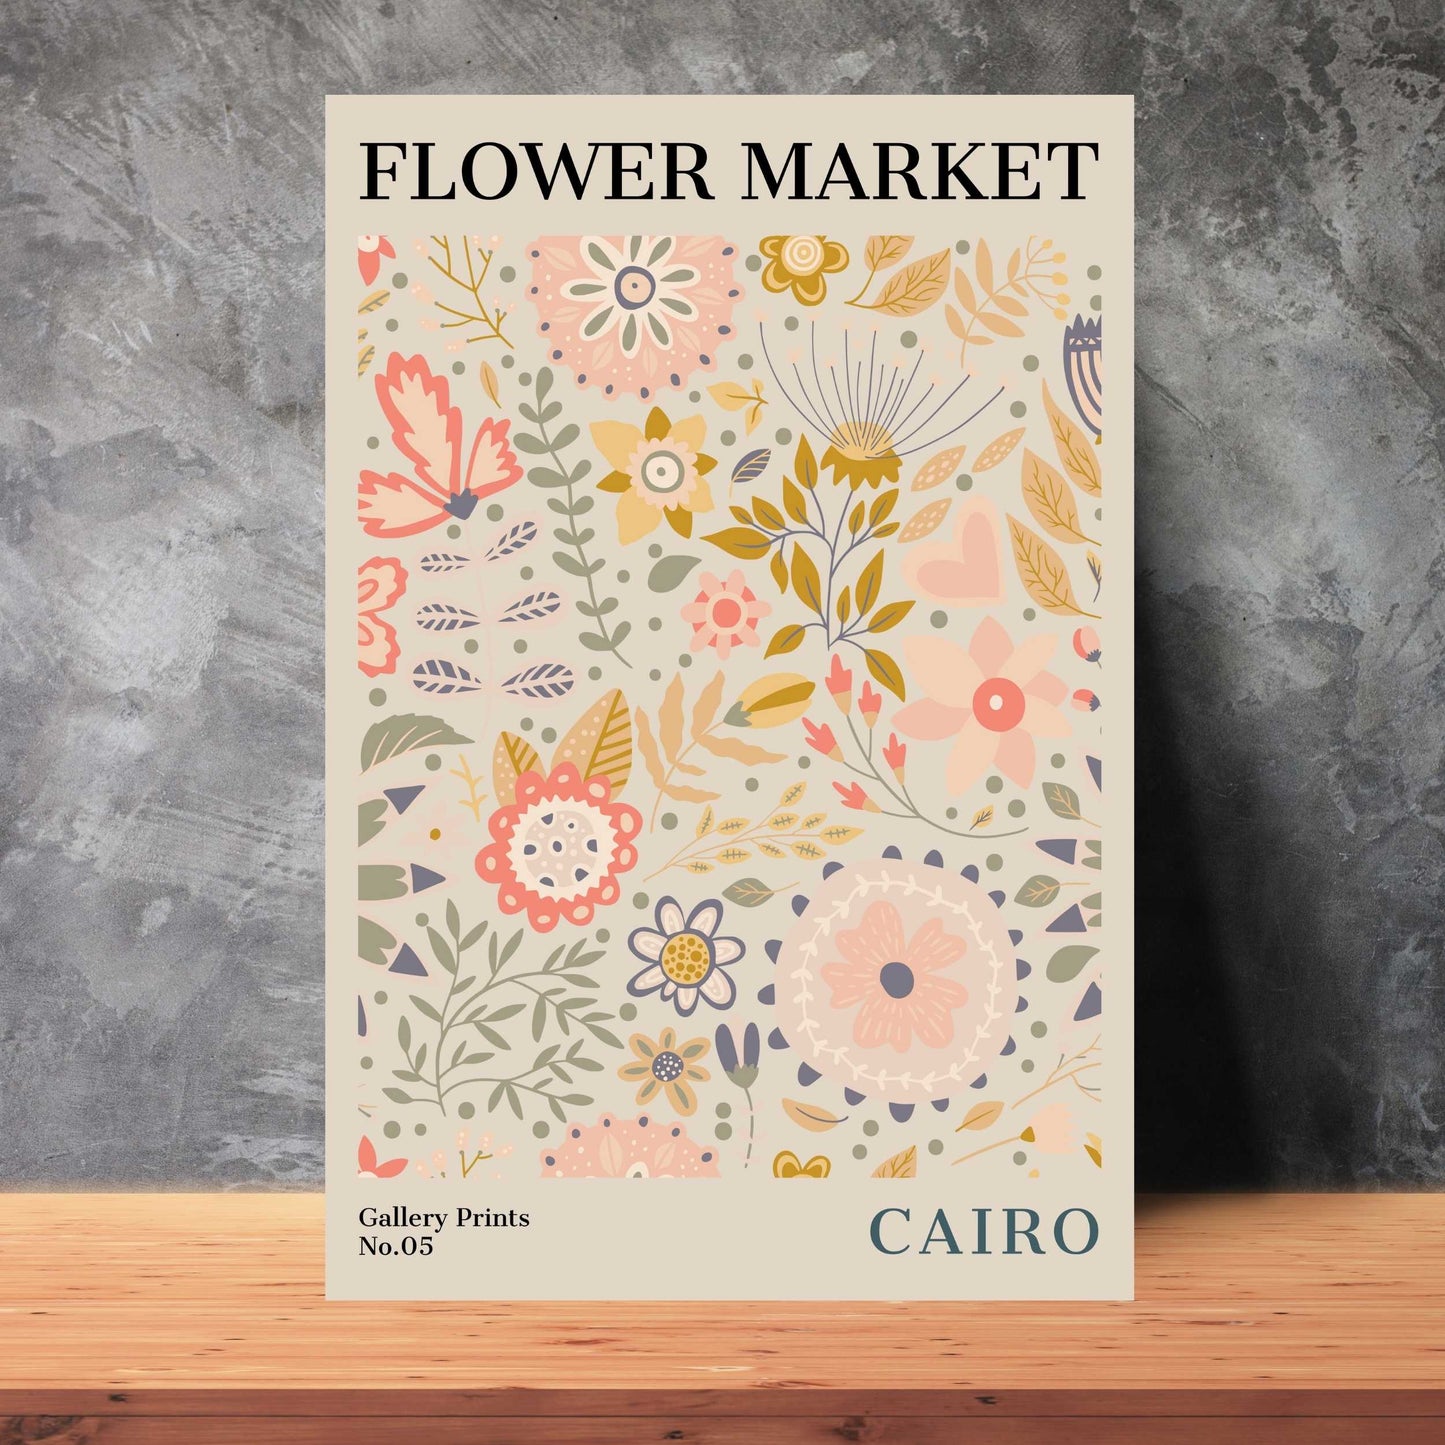 Cairo Flower Market Poster | S01